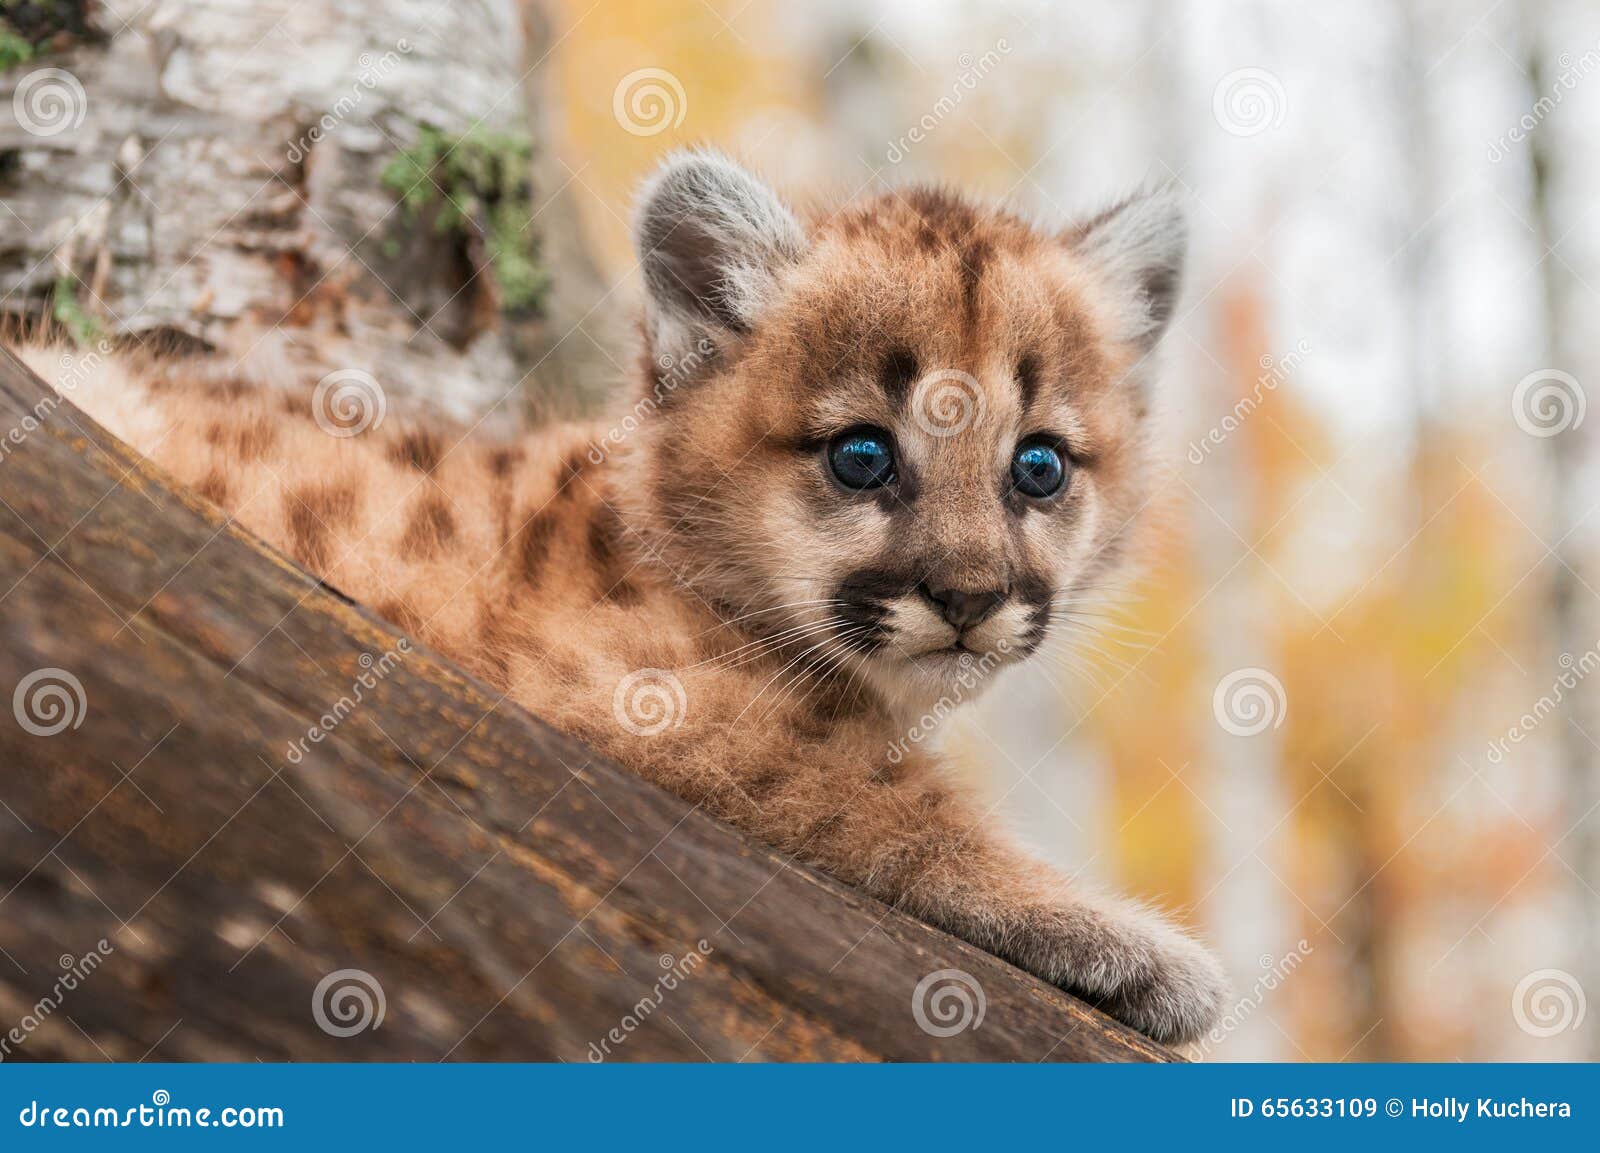 Female Cougar Kitten (Puma Concolor 